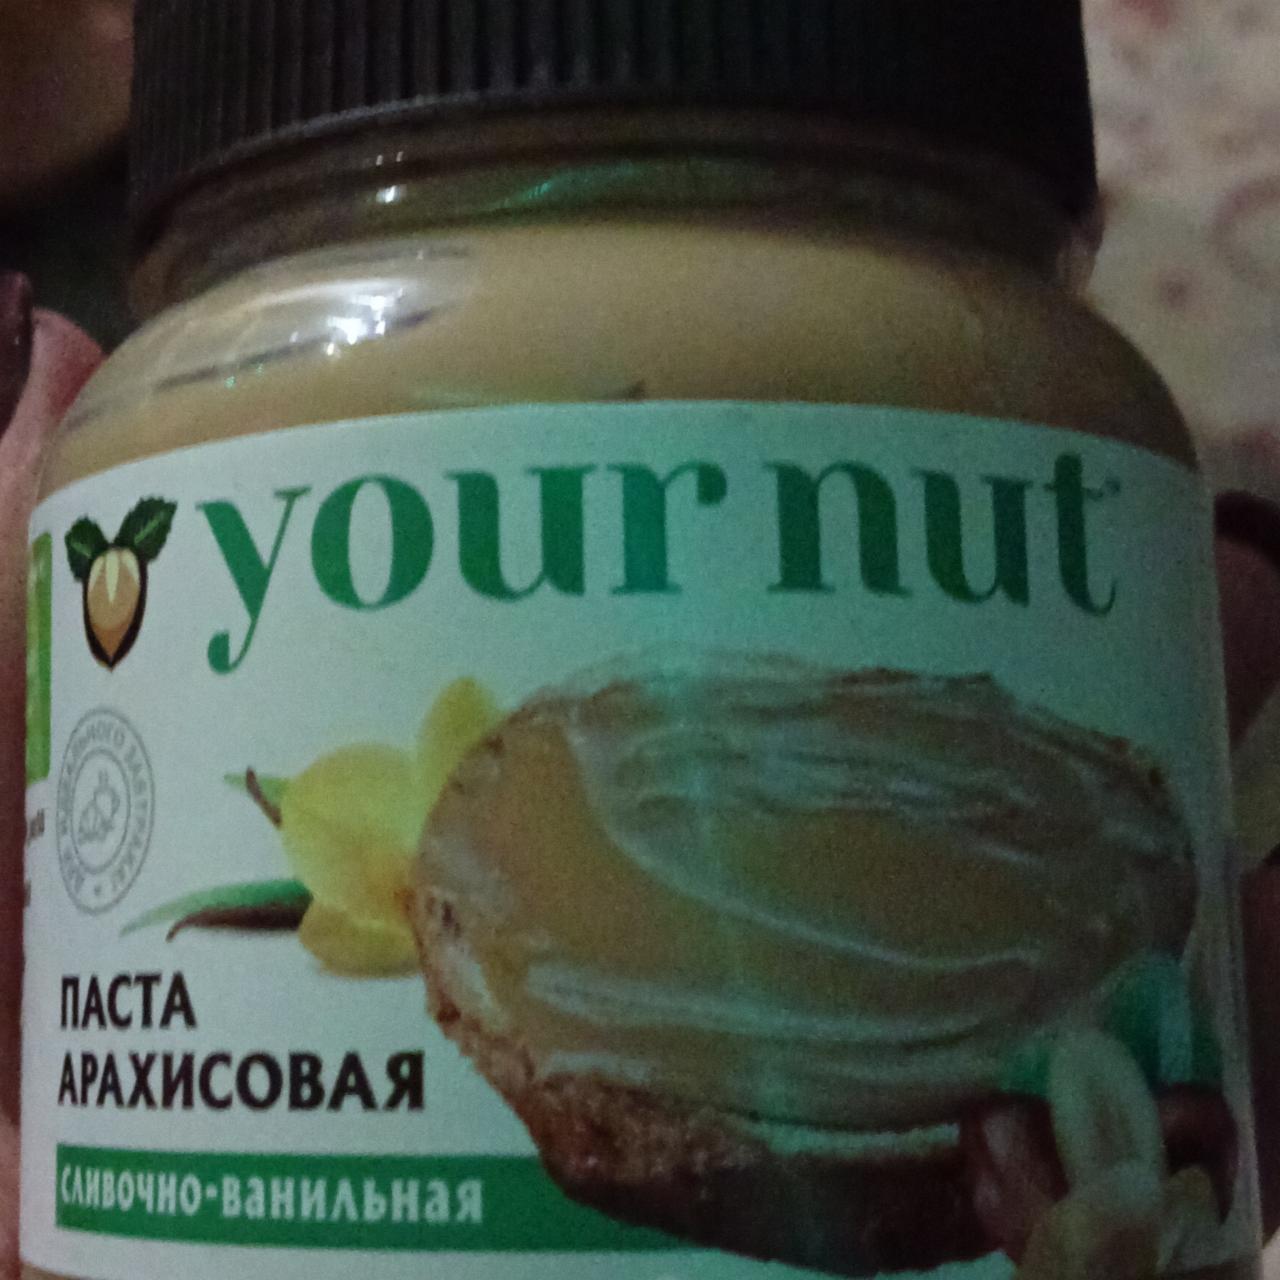 Фото - Паста арахисовая сливочно-ванильная Your nut